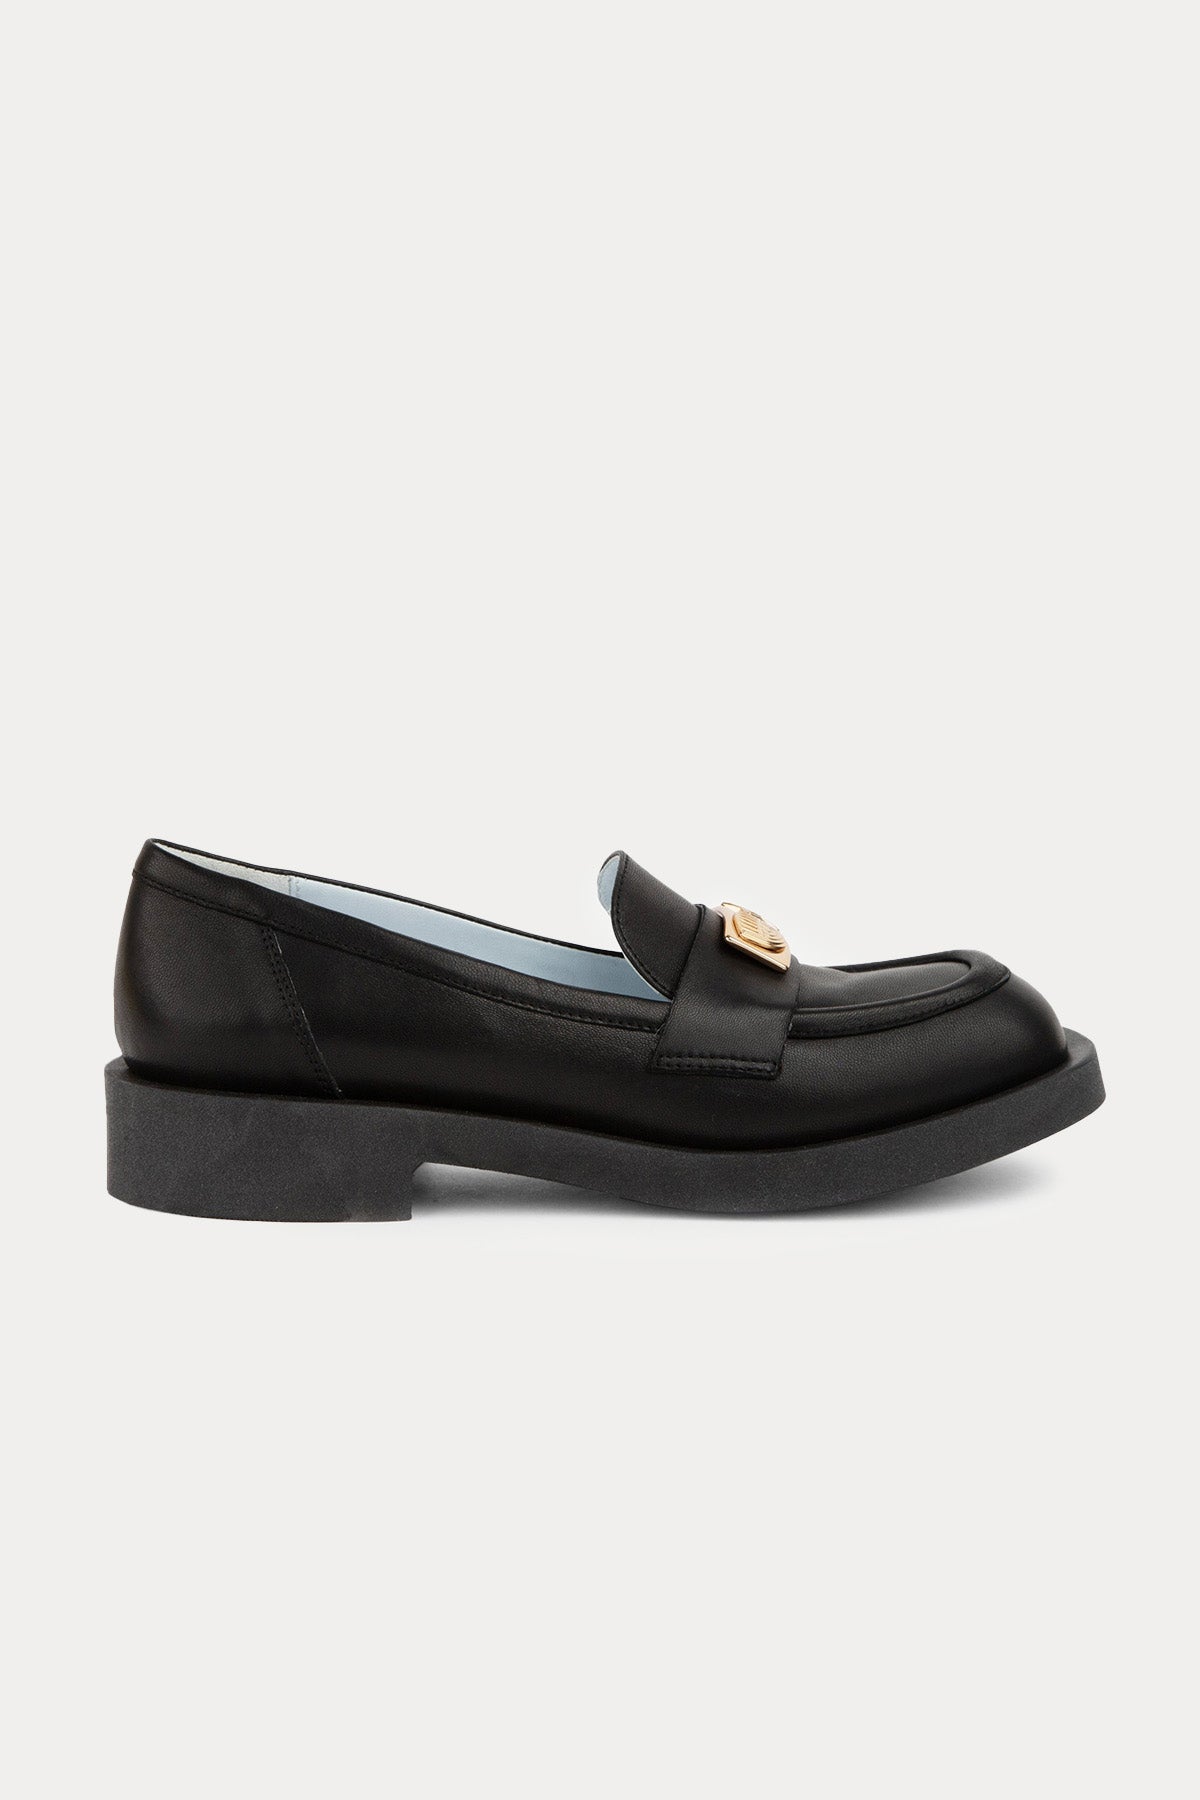 Chiara Ferragni Göz Logolu Küt Burunlu Deri Loafer Ayakkabı-Libas Trendy Fashion Store